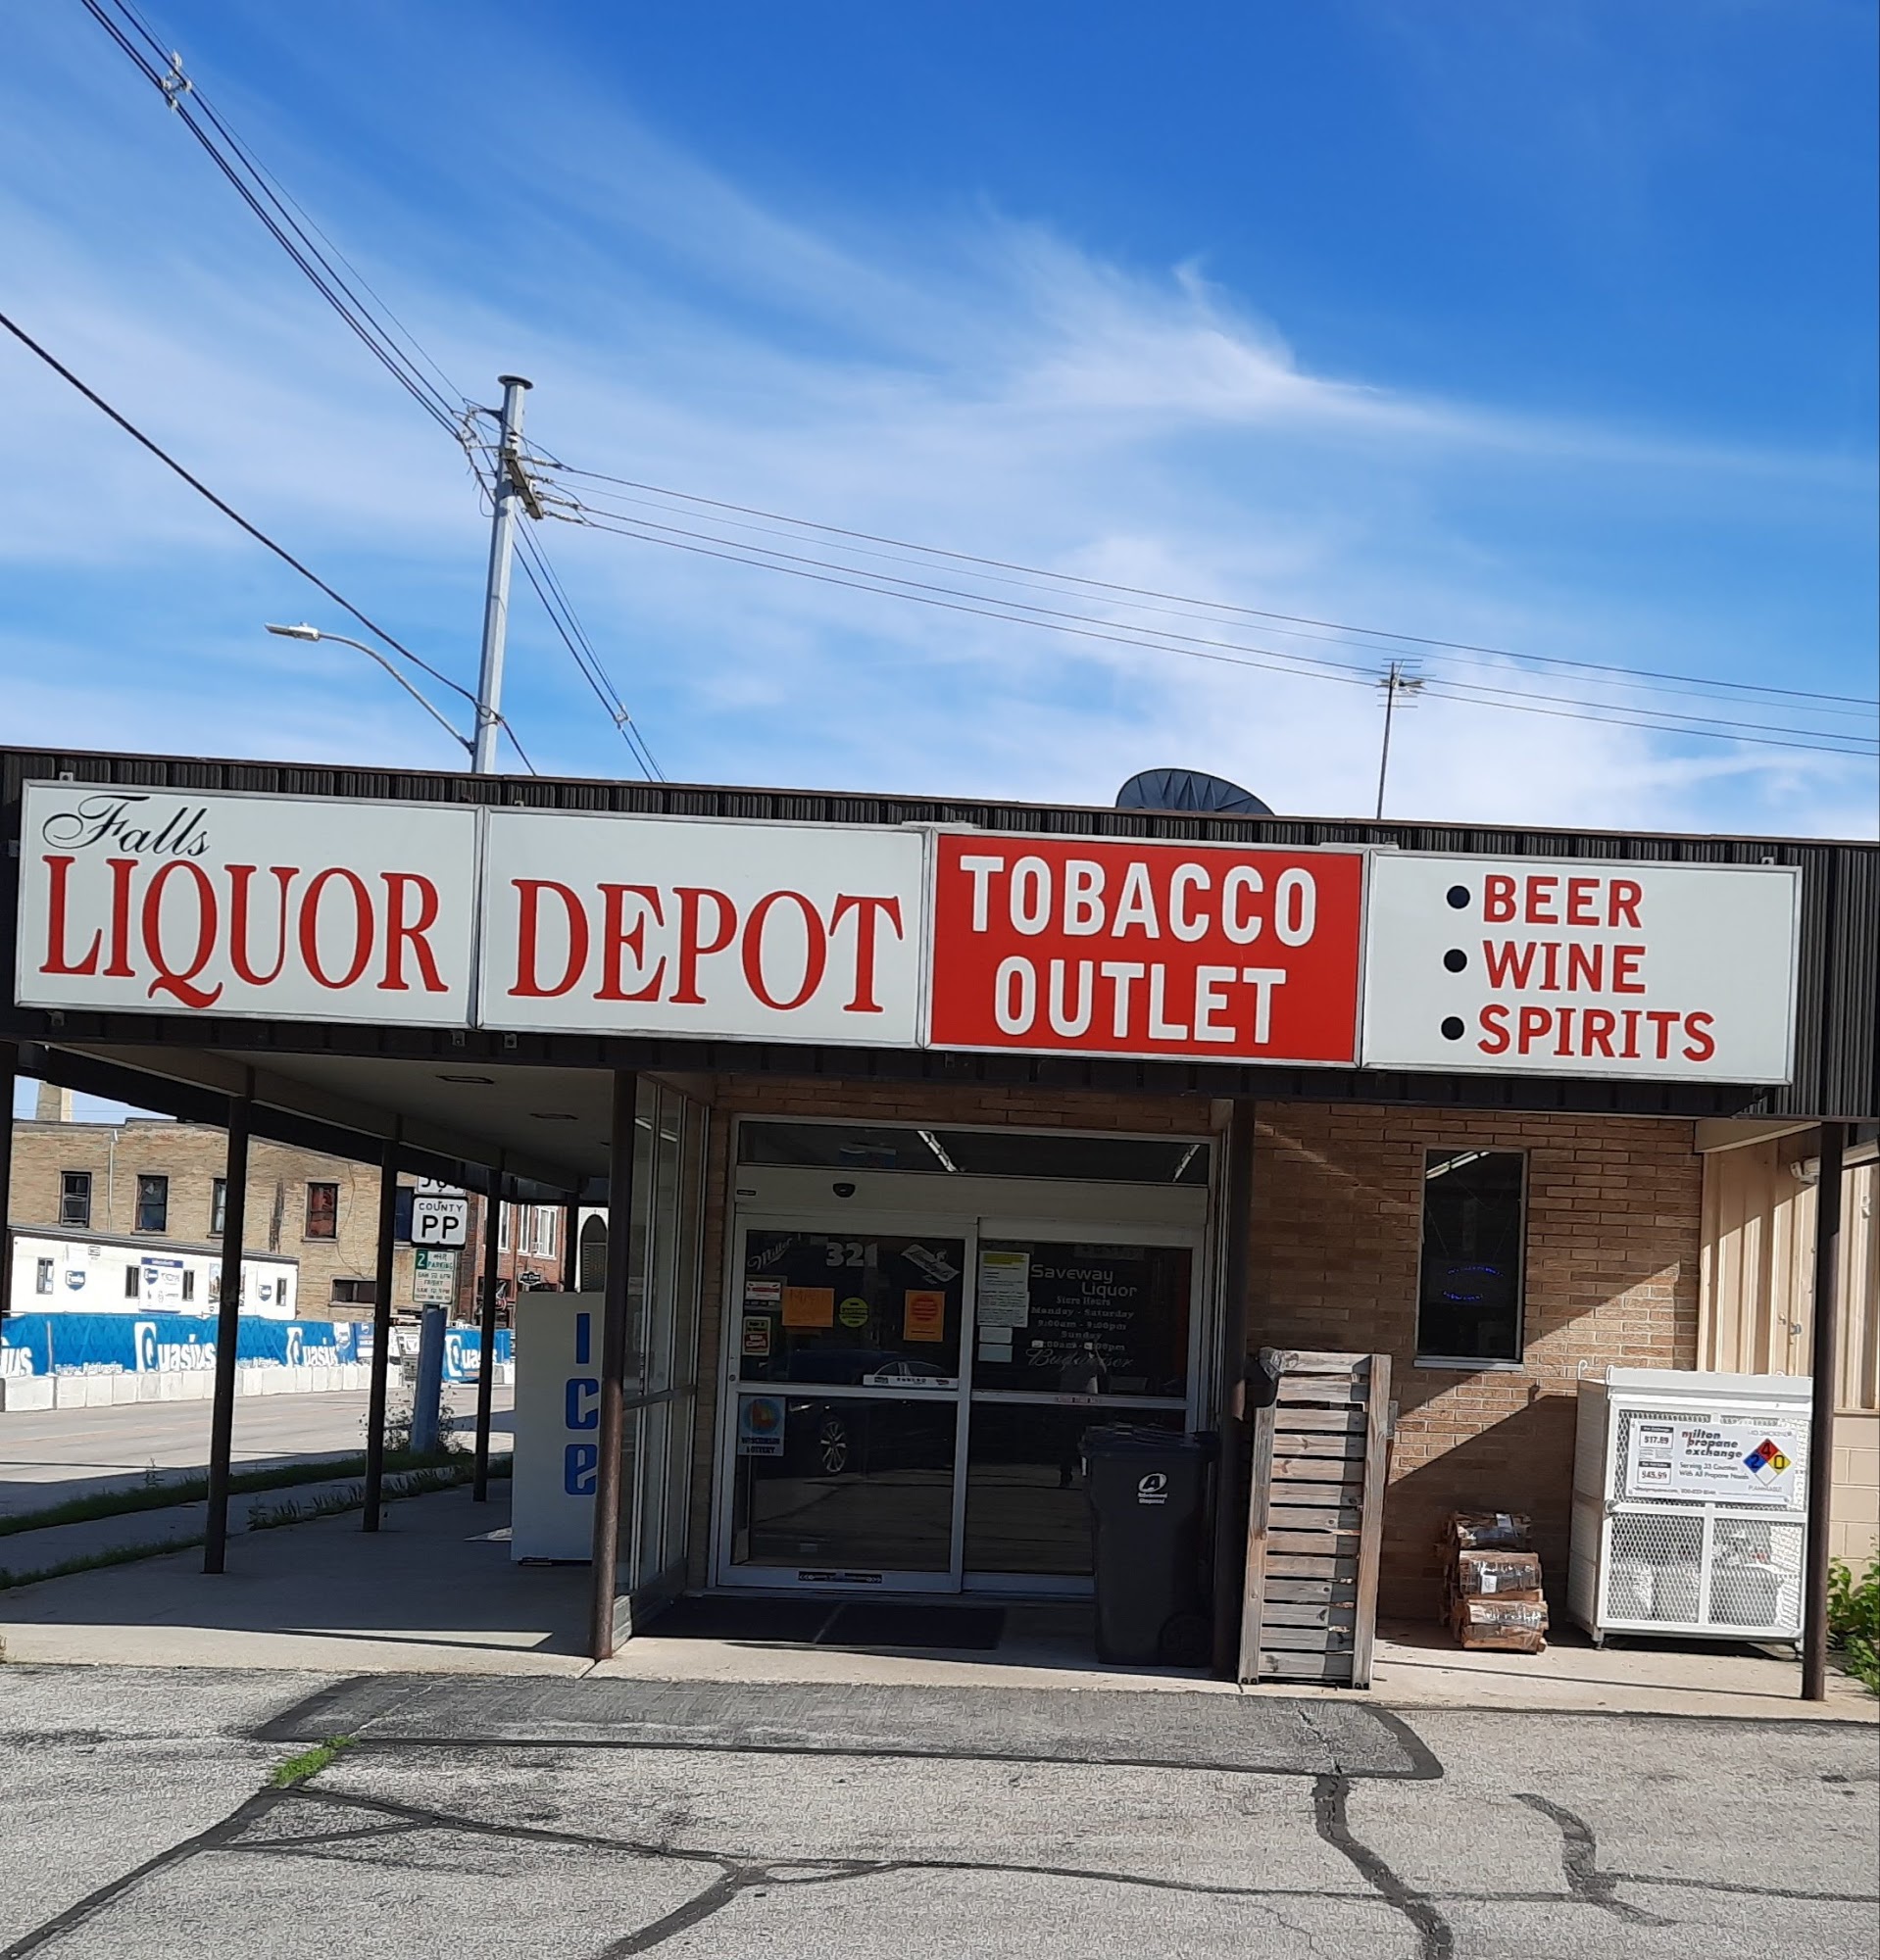 Falls Liquor Depot